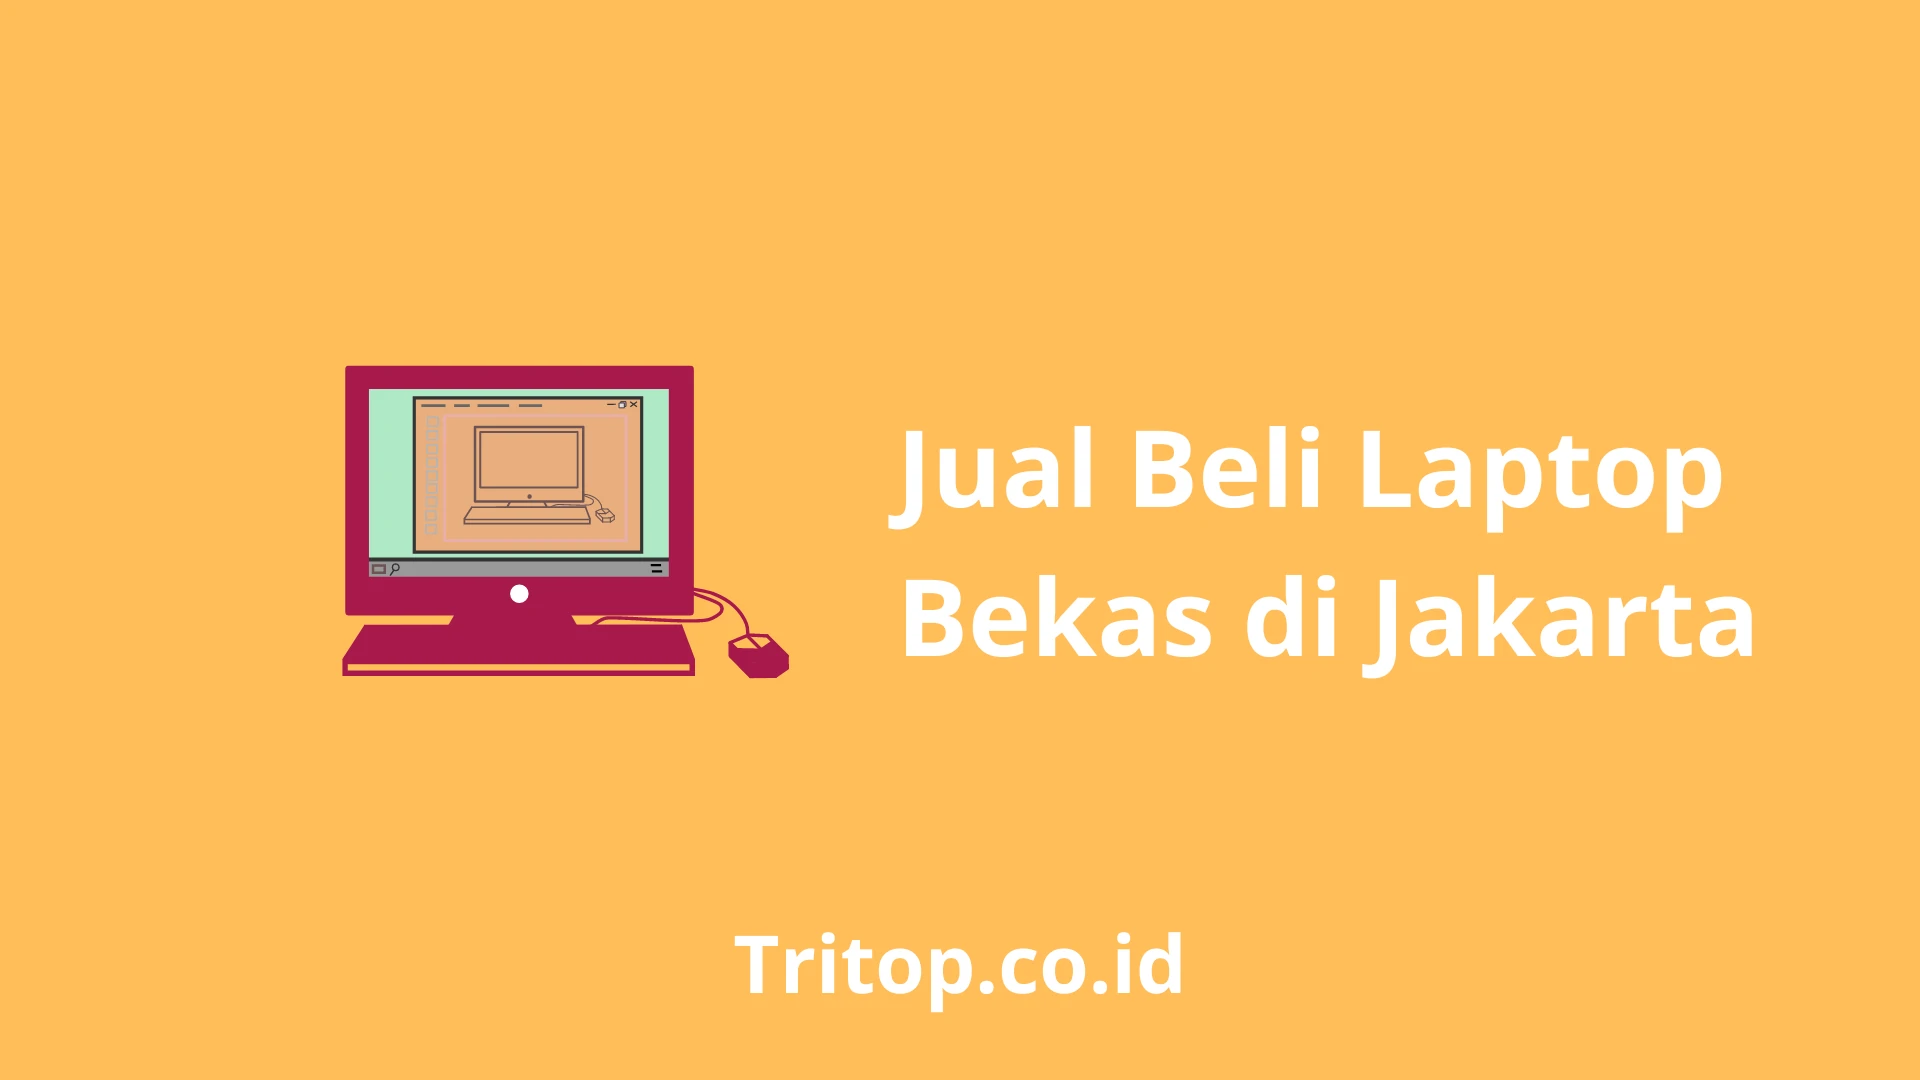 Jual Beli Laptop Bekas Jakarta Tritop.co.id